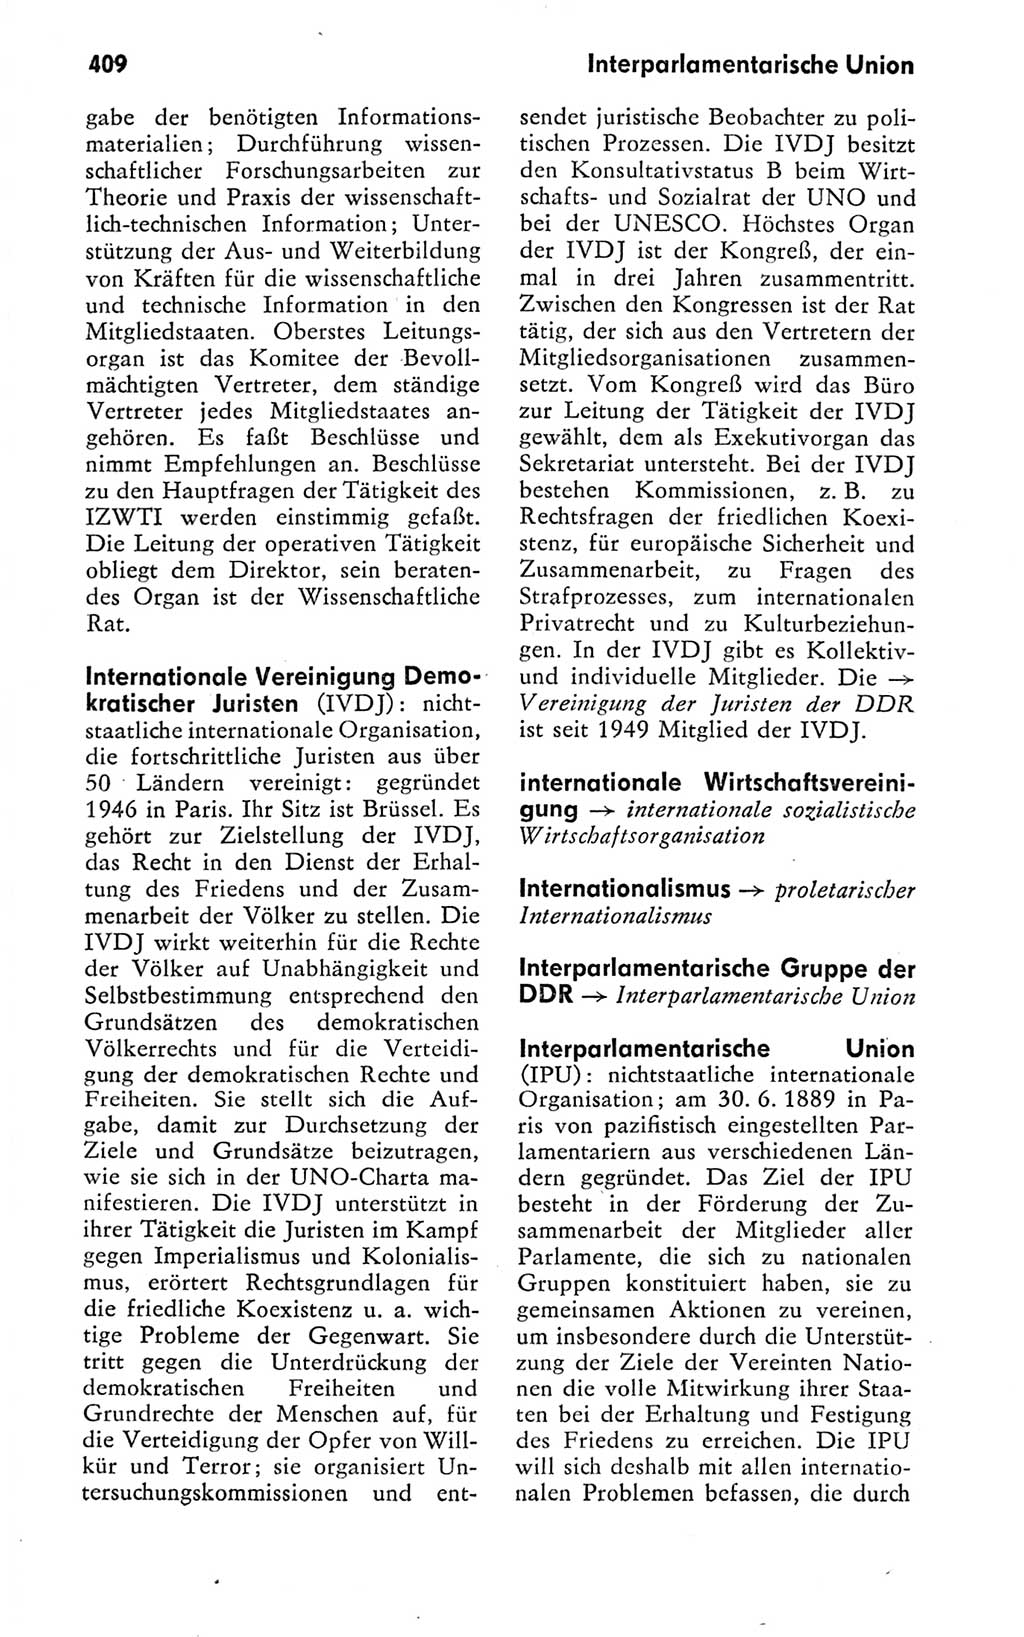 Kleines politisches Wörterbuch [Deutsche Demokratische Republik (DDR)] 1978, Seite 409 (Kl. pol. Wb. DDR 1978, S. 409)